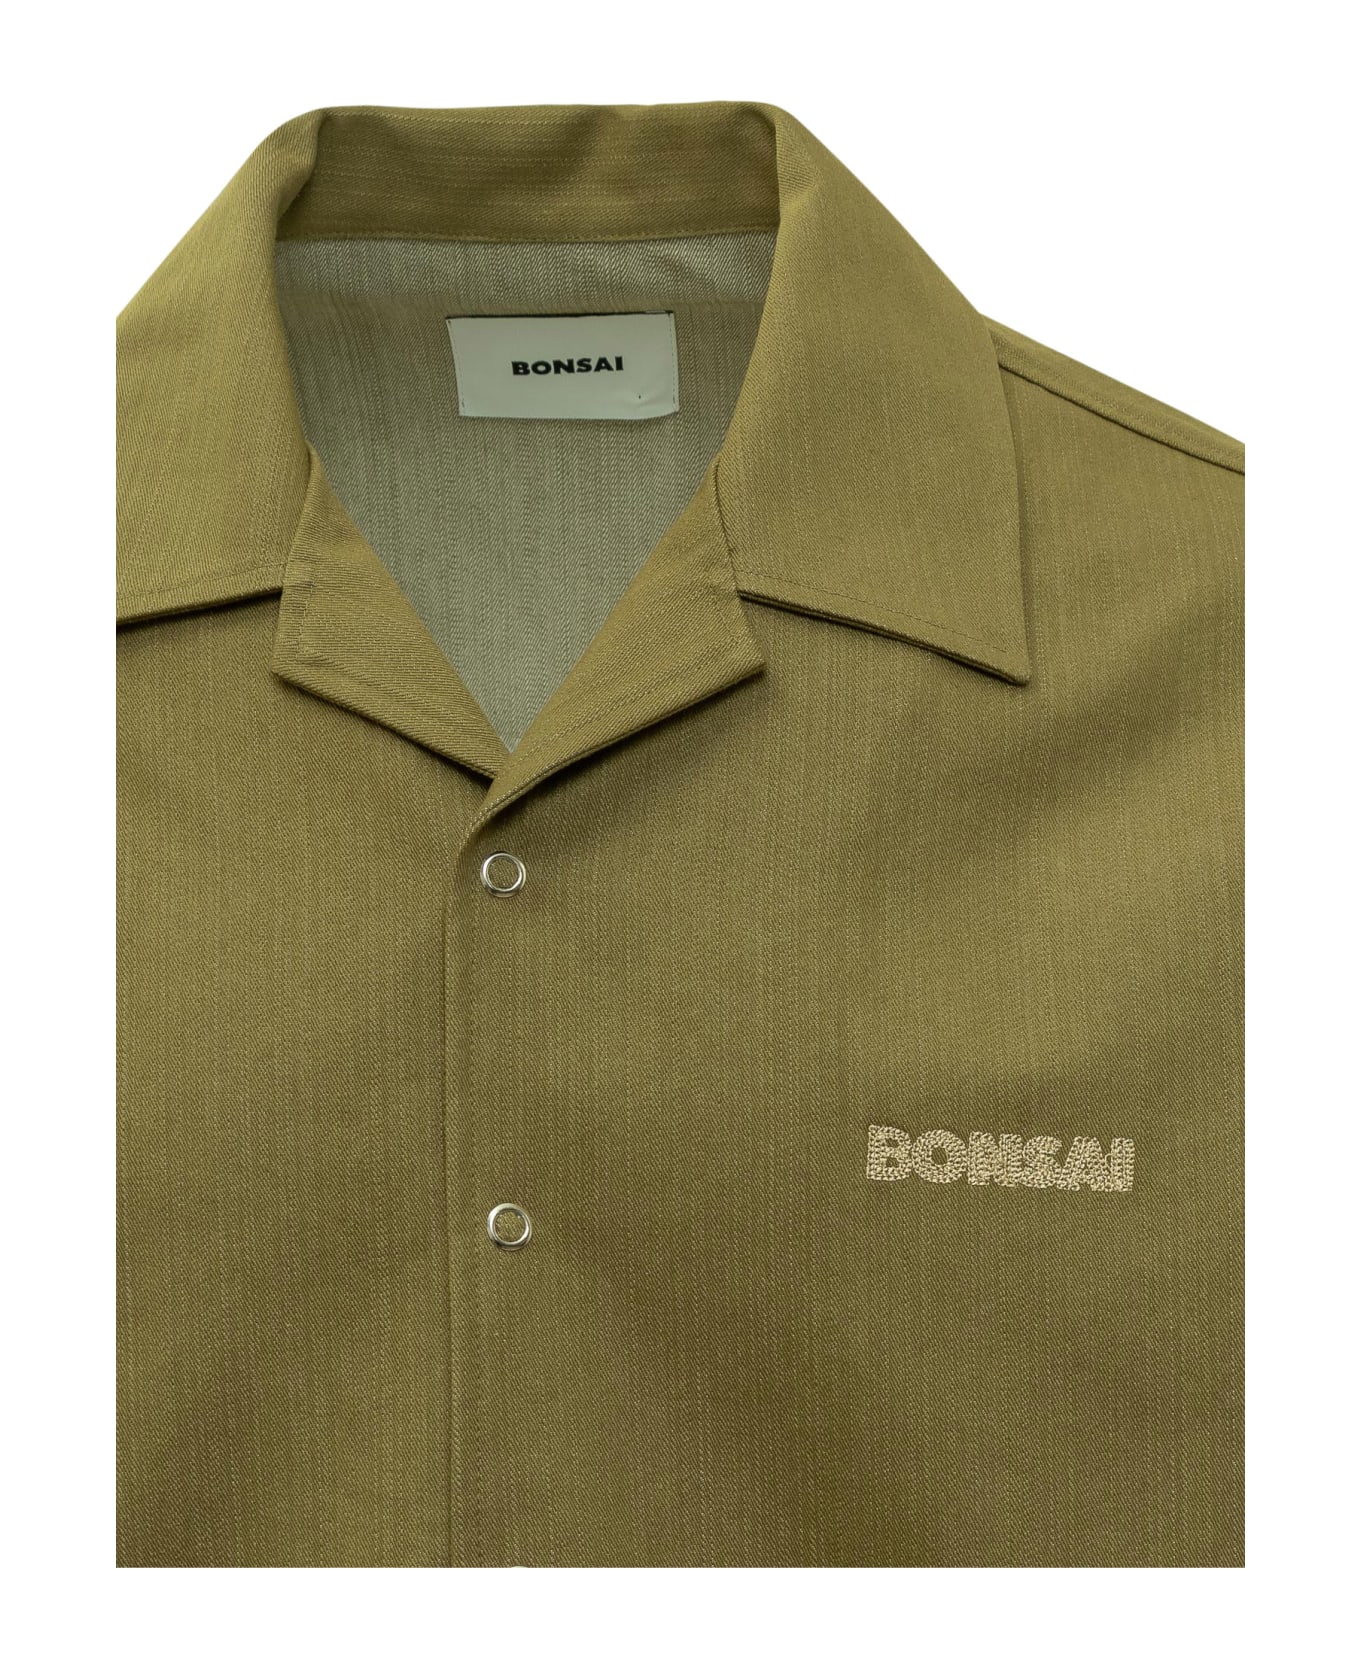 Bonsai Oversize Shirt - CRESS GREEN